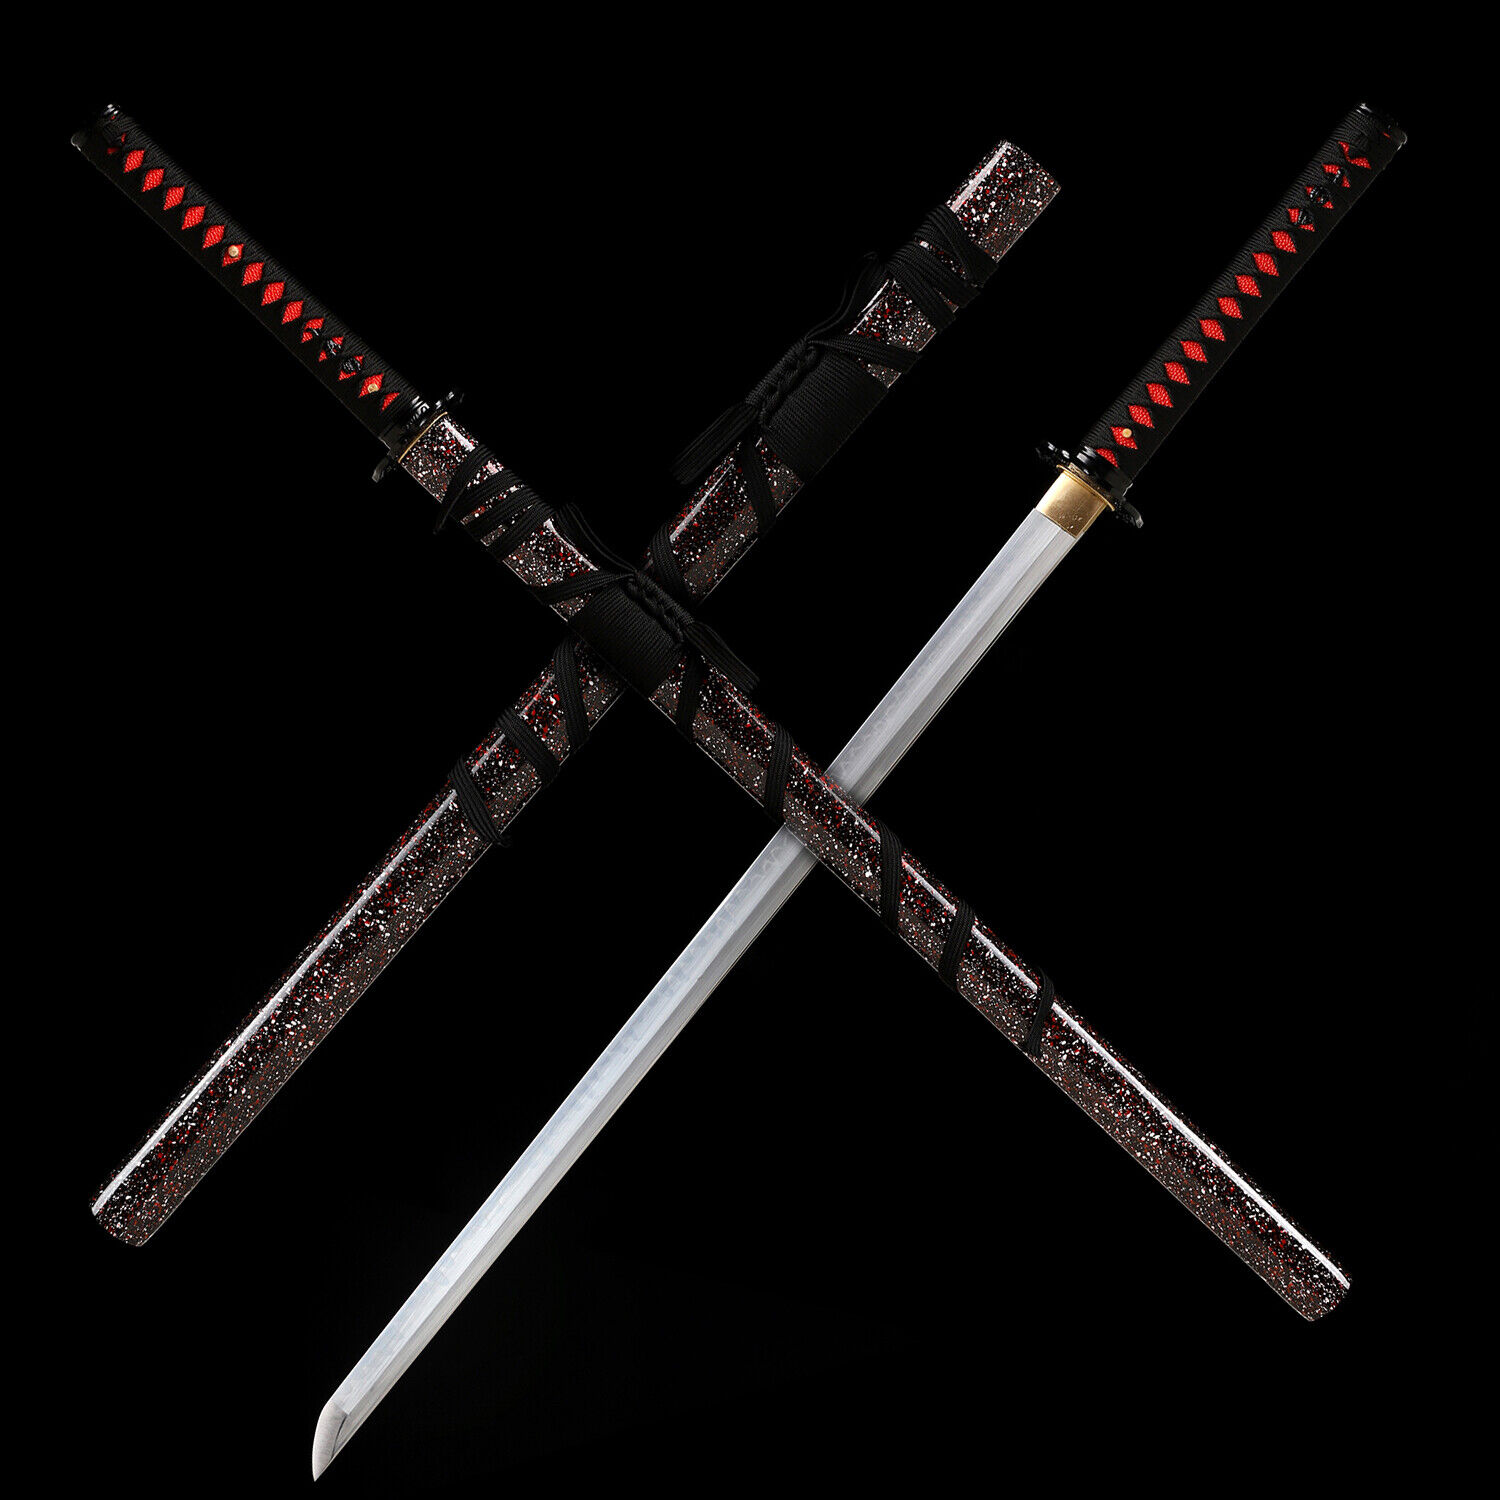 Ninjato Clay Temperped T10 Steel Japanese Samurai Ninja Sword Katana Sharp